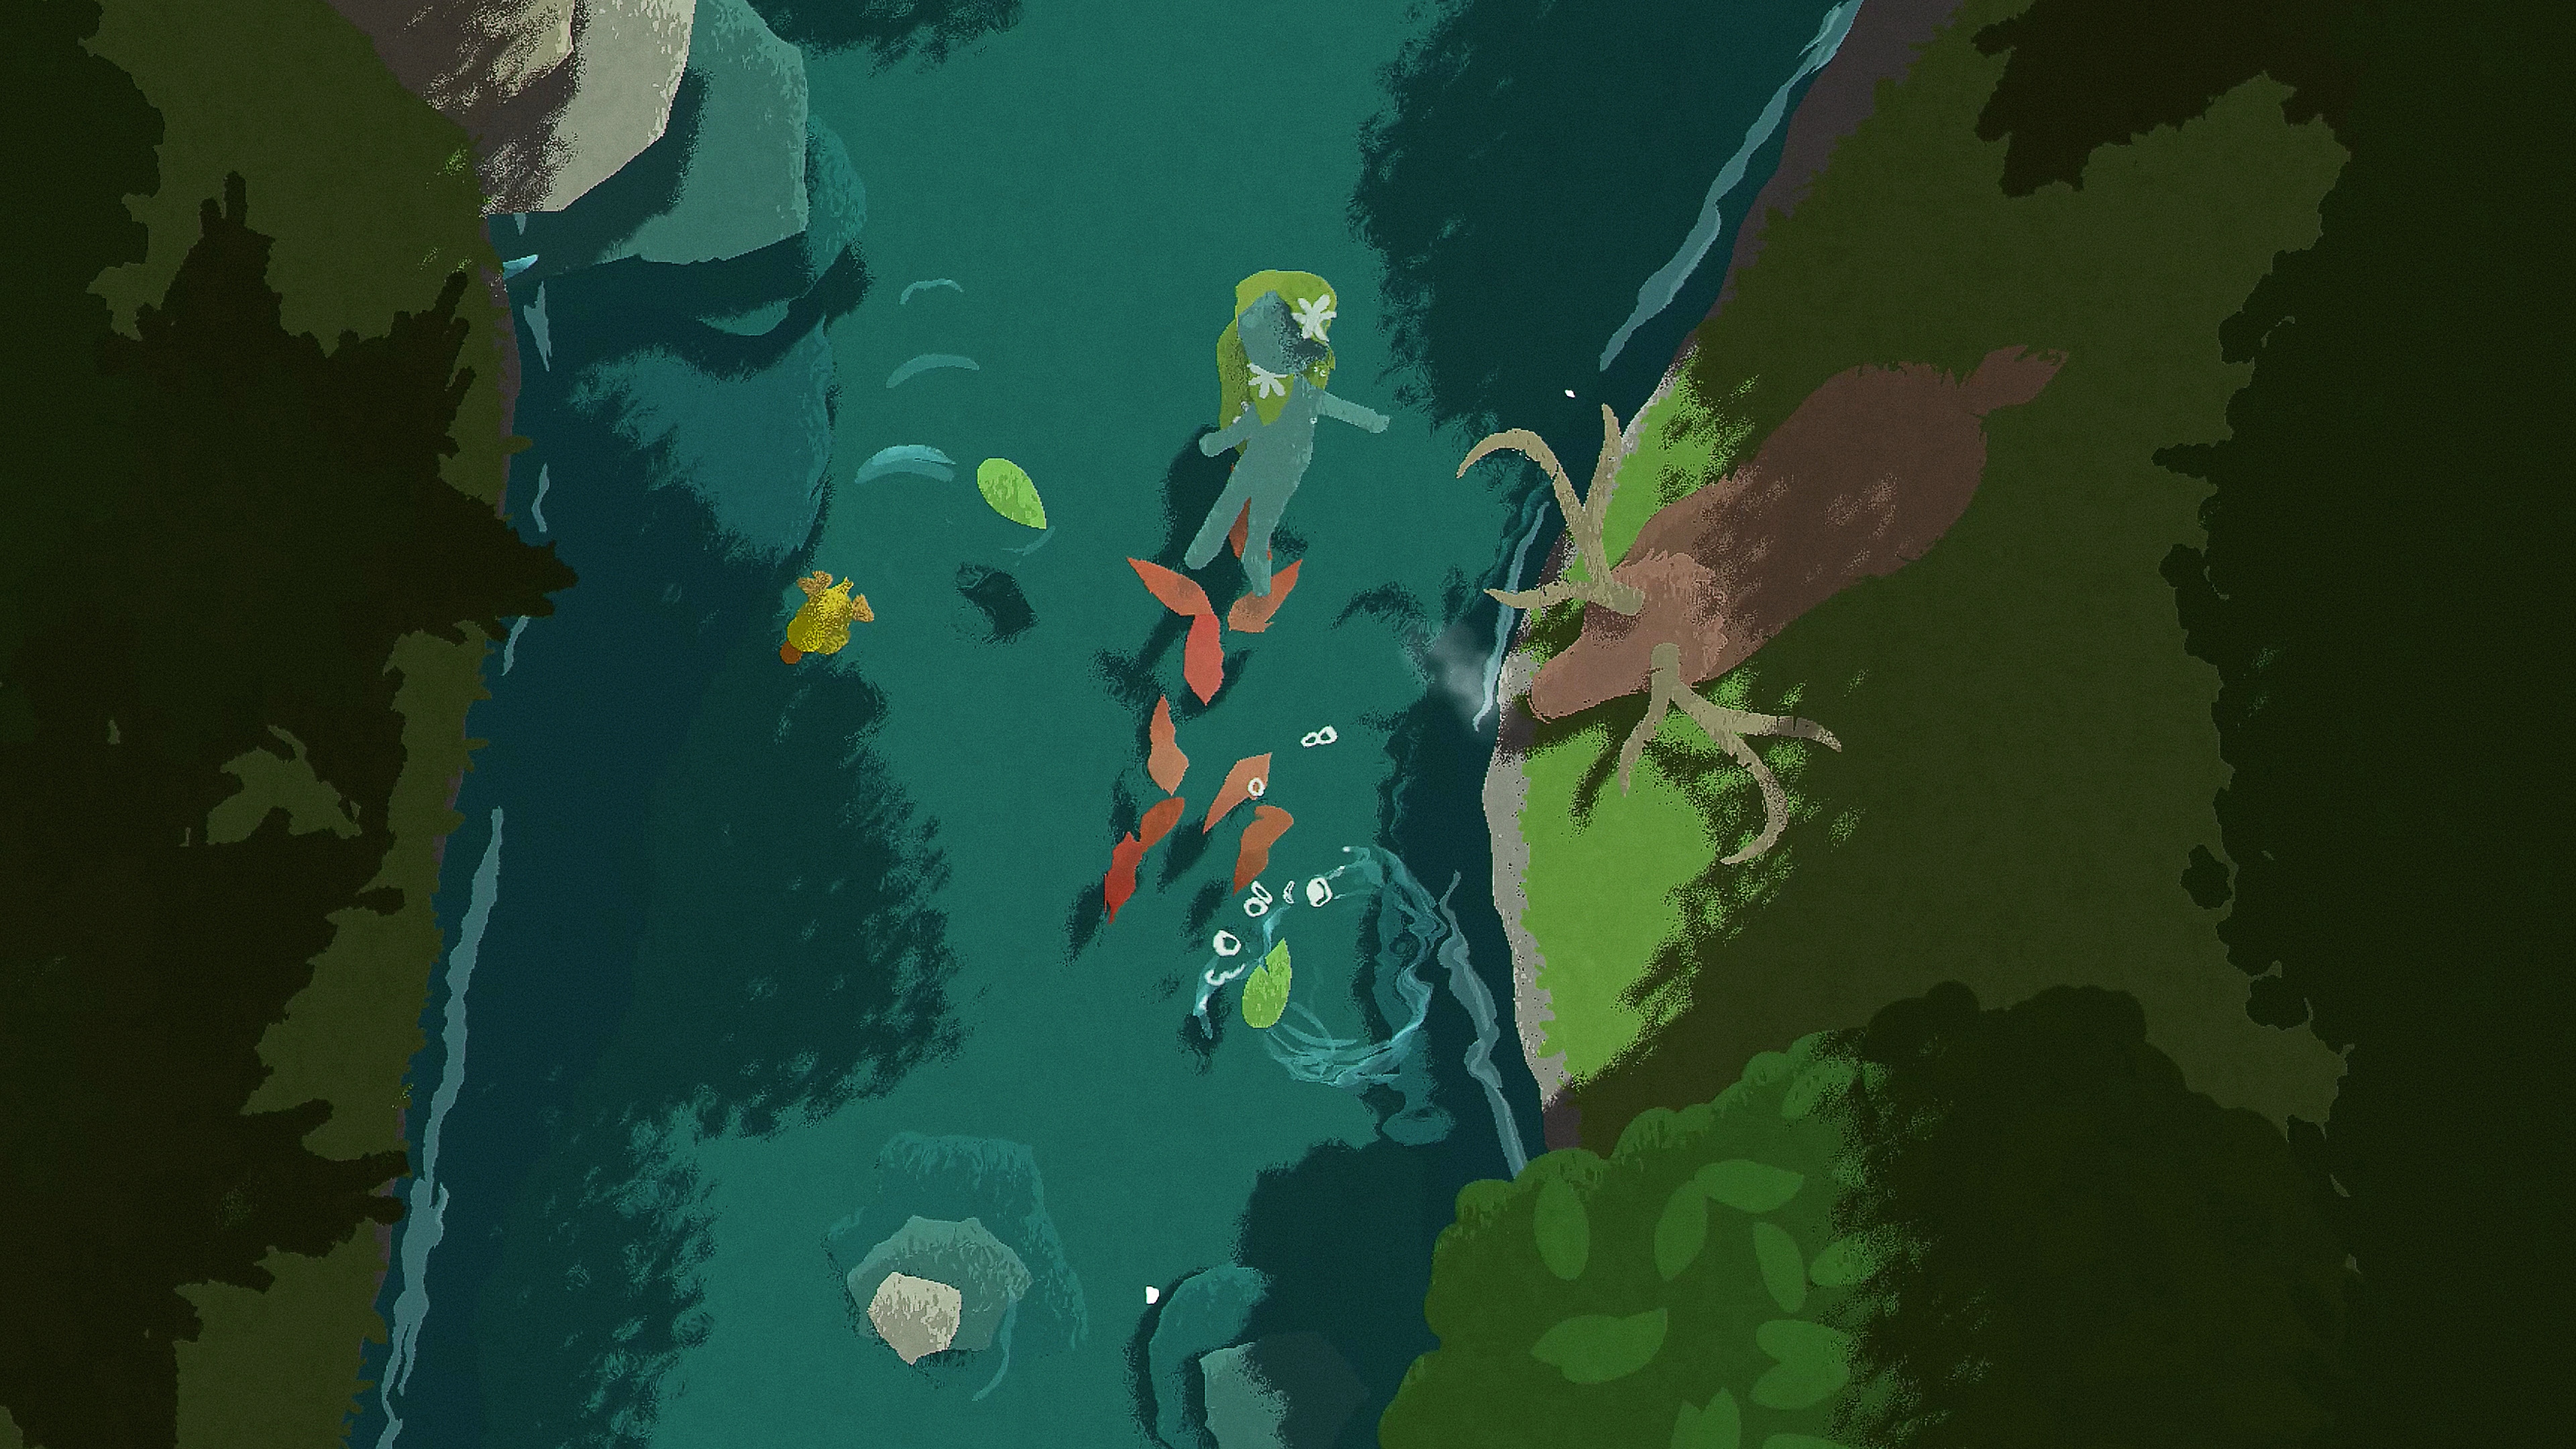 Naiad - Istantanea della schermata che mostra un personaggio che galleggia lungo un fiume mentre un cervo si trova sulla riva del fiume